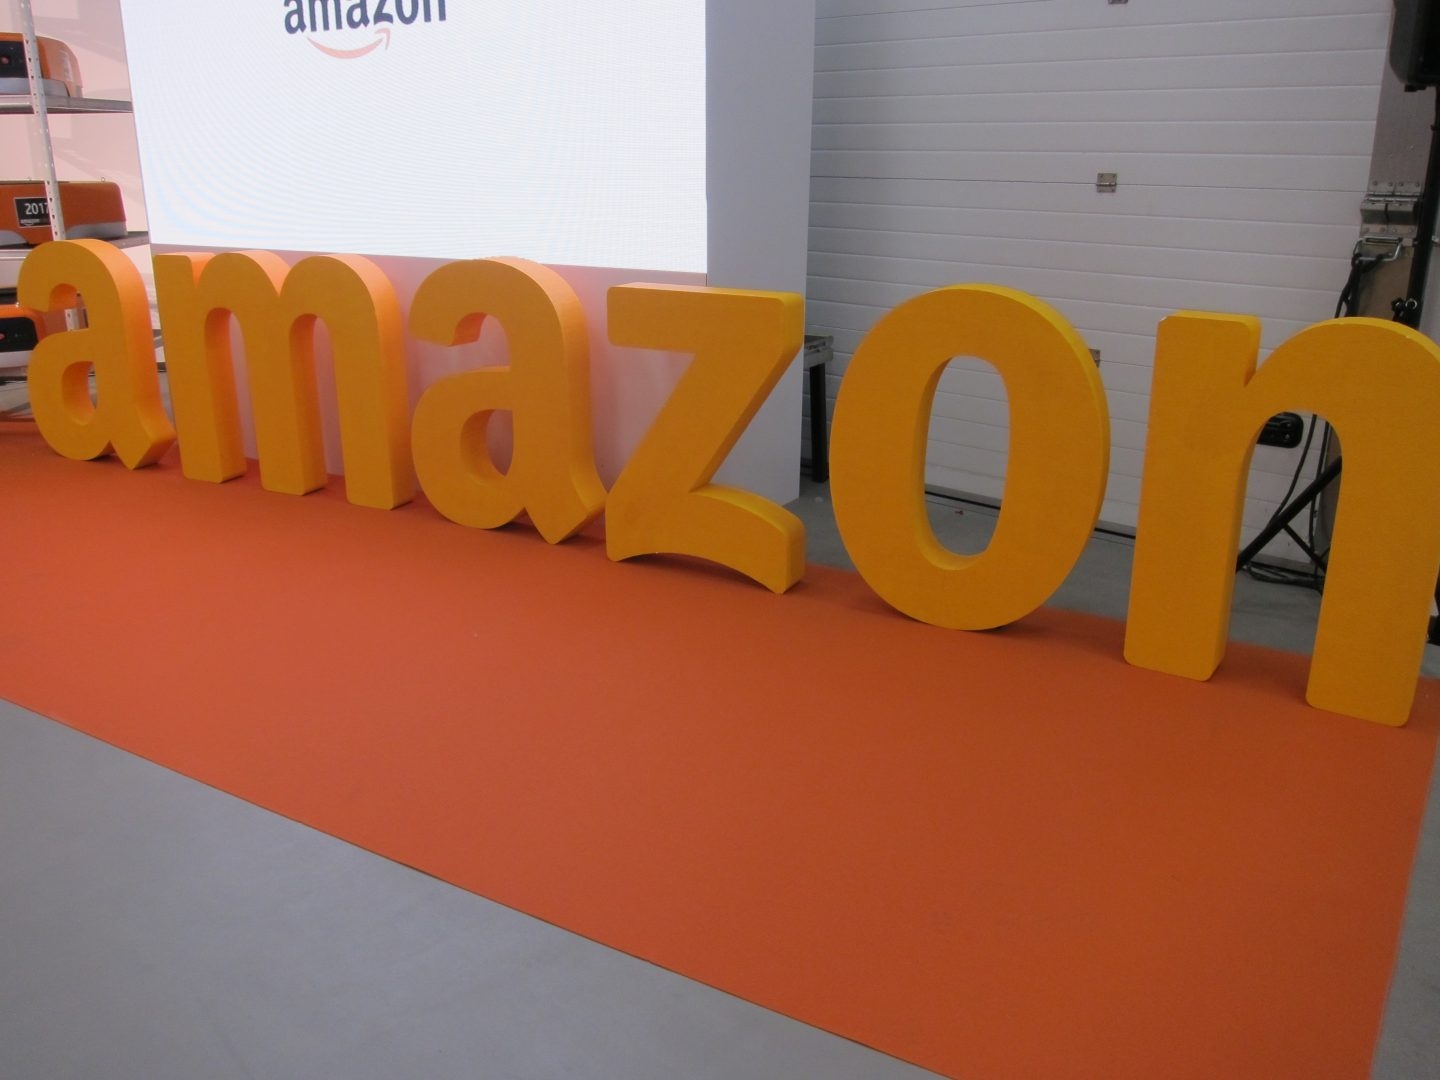 Logotipo de la compañía Amazon.